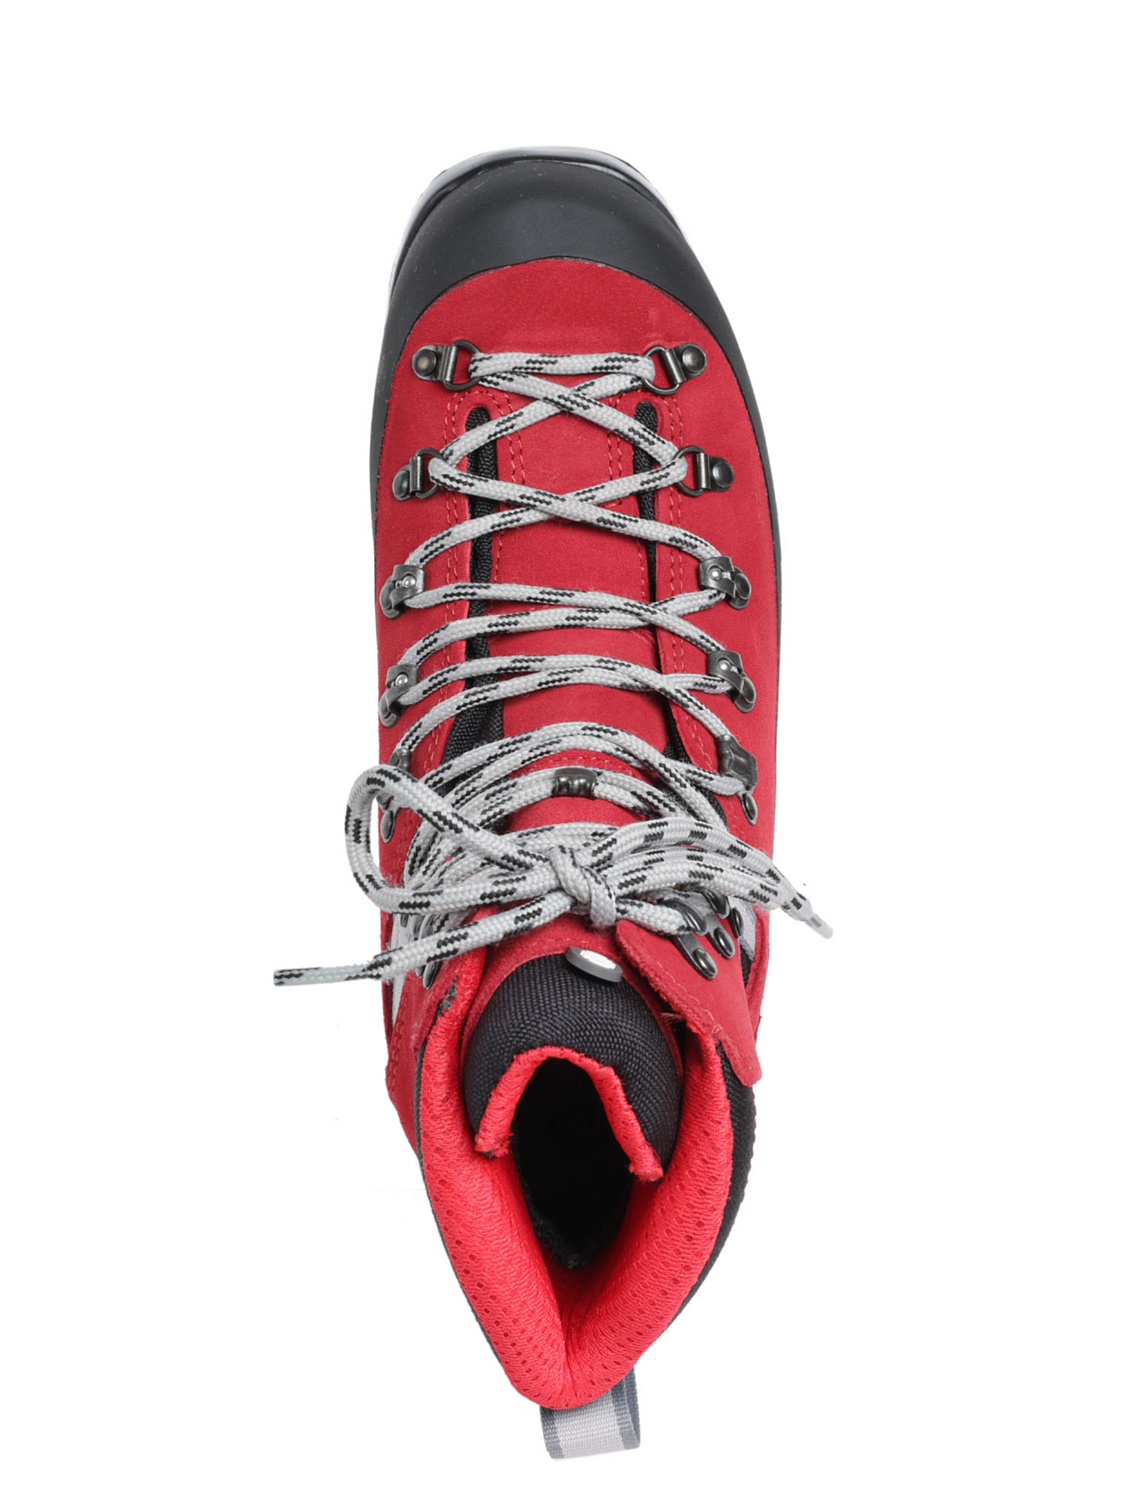 Лыжные ботинки Alpina. Alaska Red